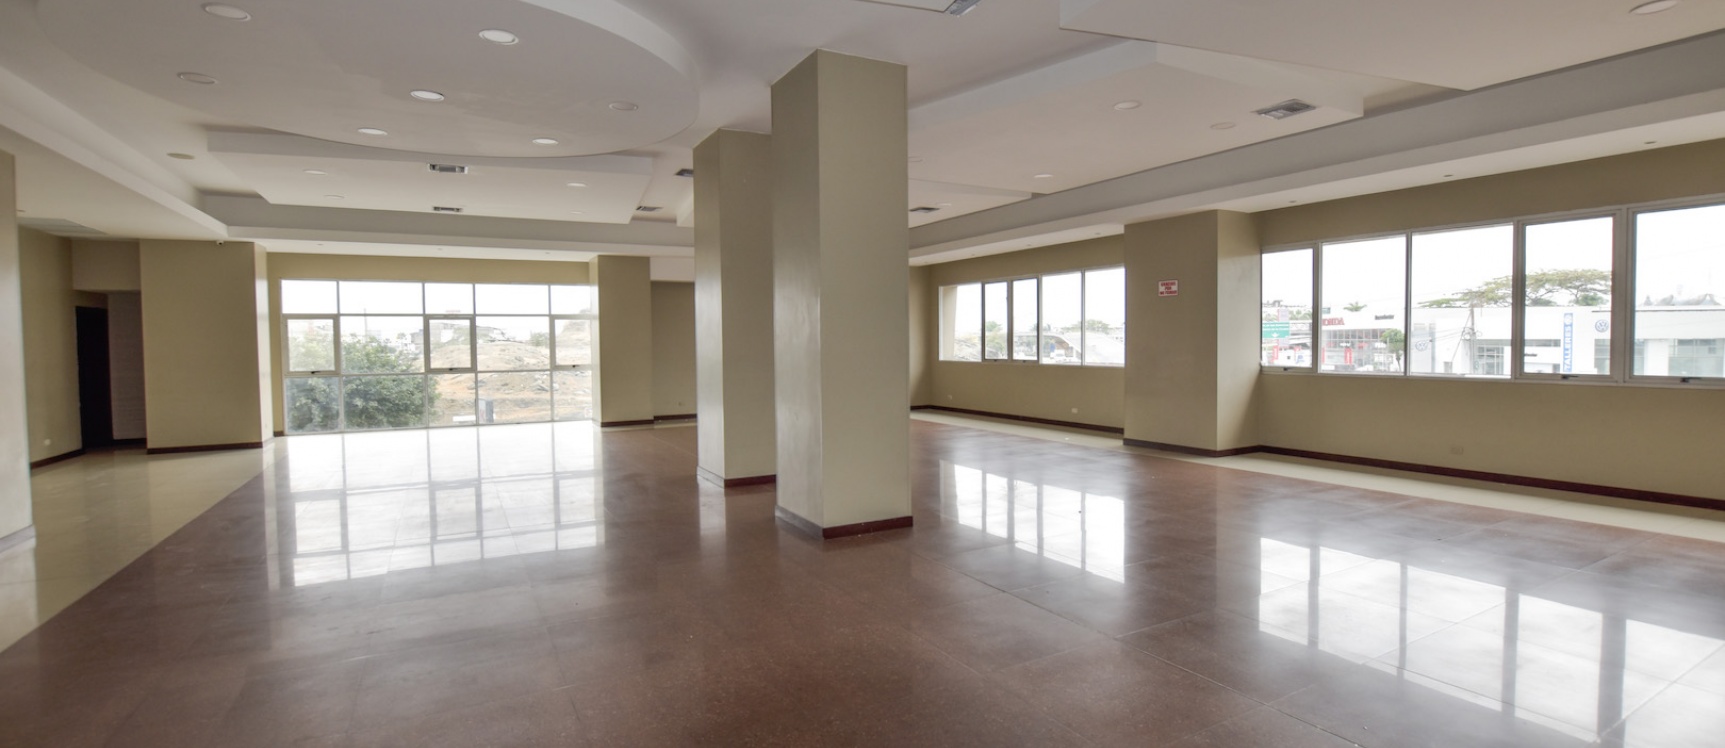 GeoBienes - Departamento en venta en edificio Élite Building, Guayaquil - Ecuador - Plusvalia Guayaquil Casas de venta y alquiler Inmobiliaria Ecuador